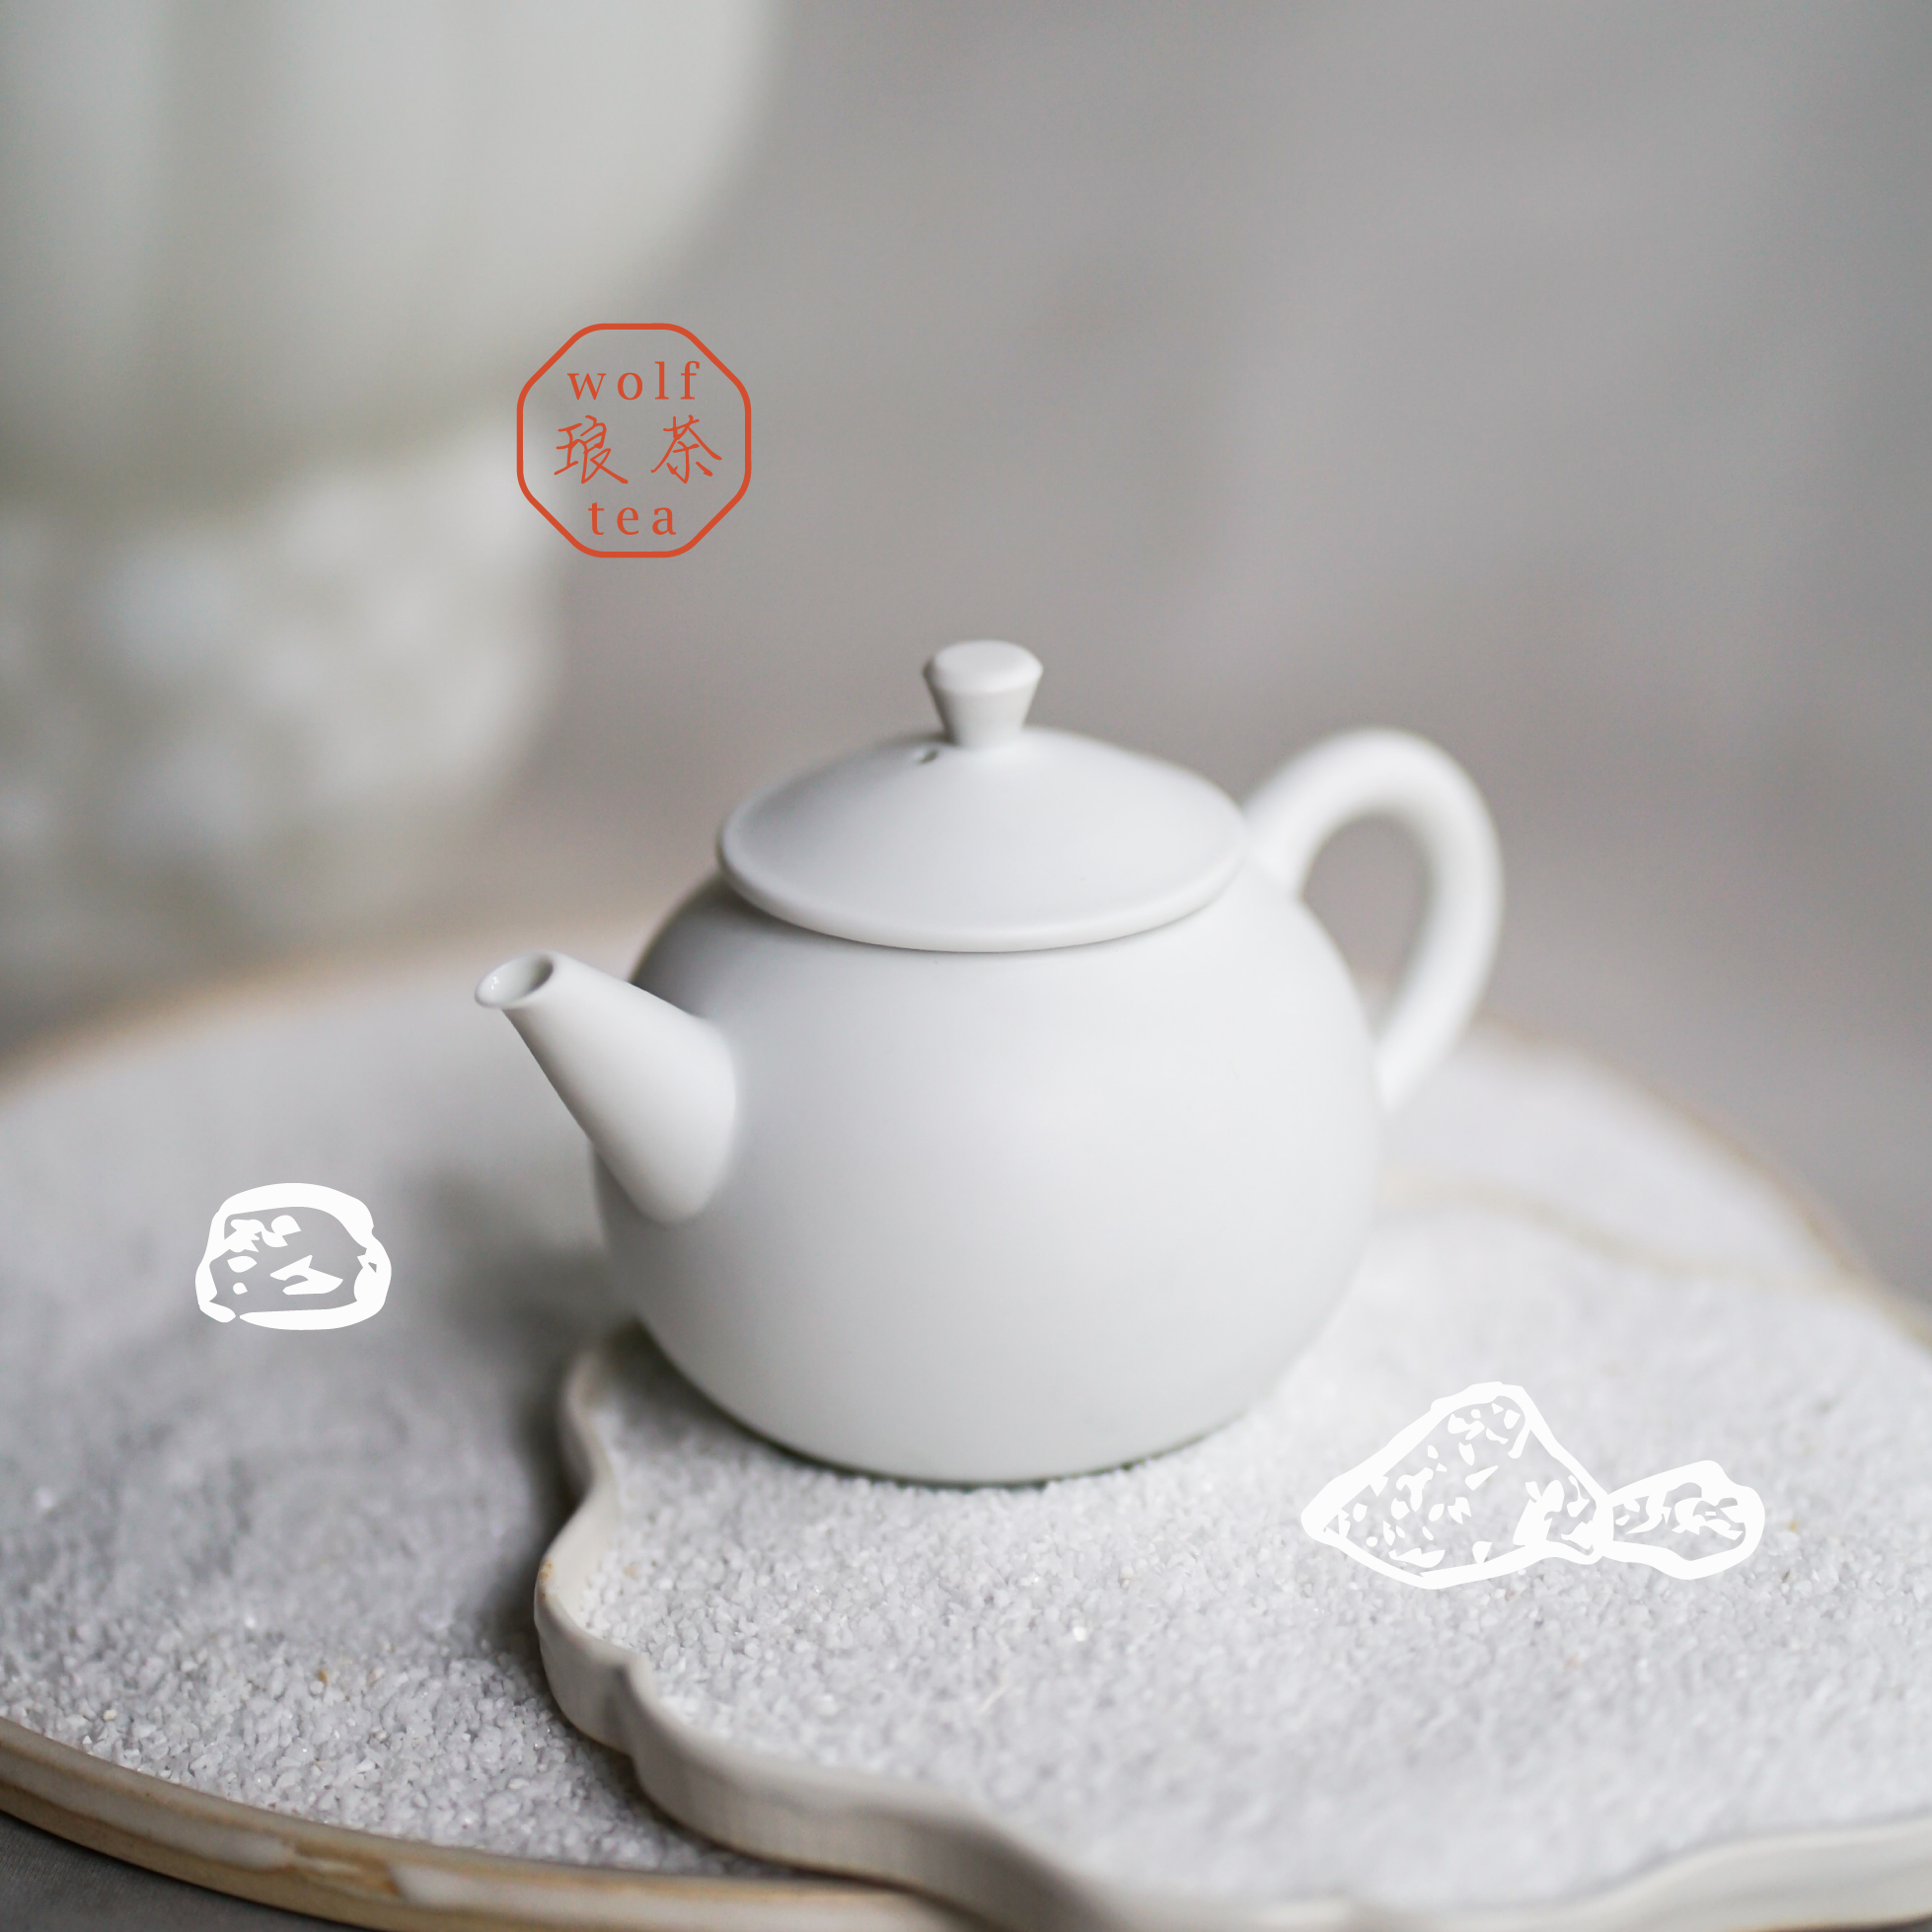 限定記念新急須マットホワイト | 台湾茶專門 - 琅茶 Wolf Tea